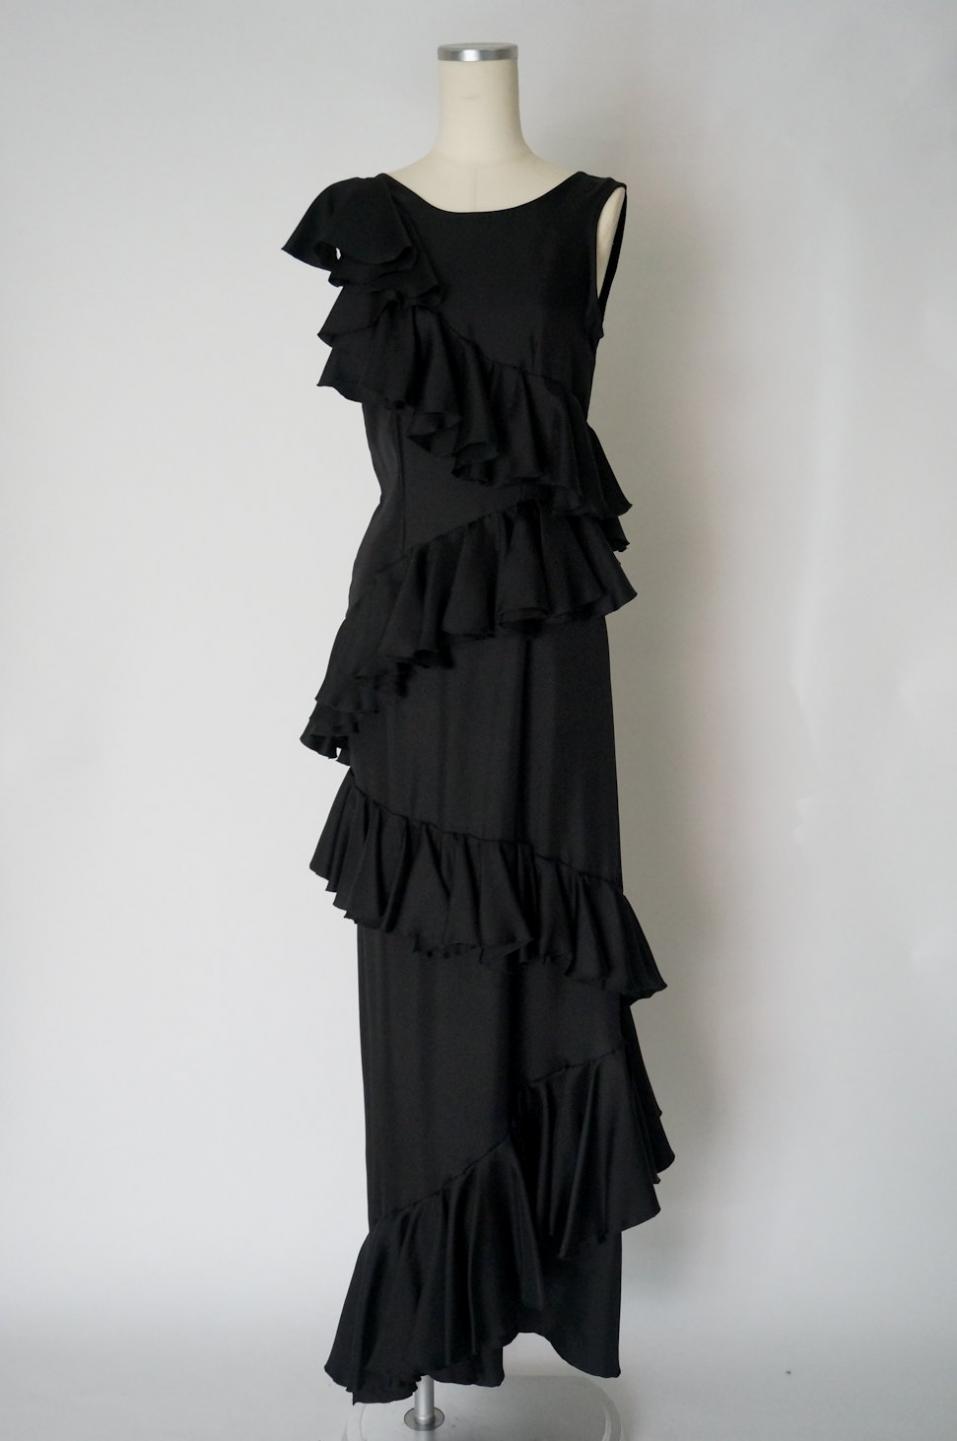 サフィア イースト フリルロングドレス レンタルリトルブラックドレス テン Rental Little Black Dress Ten